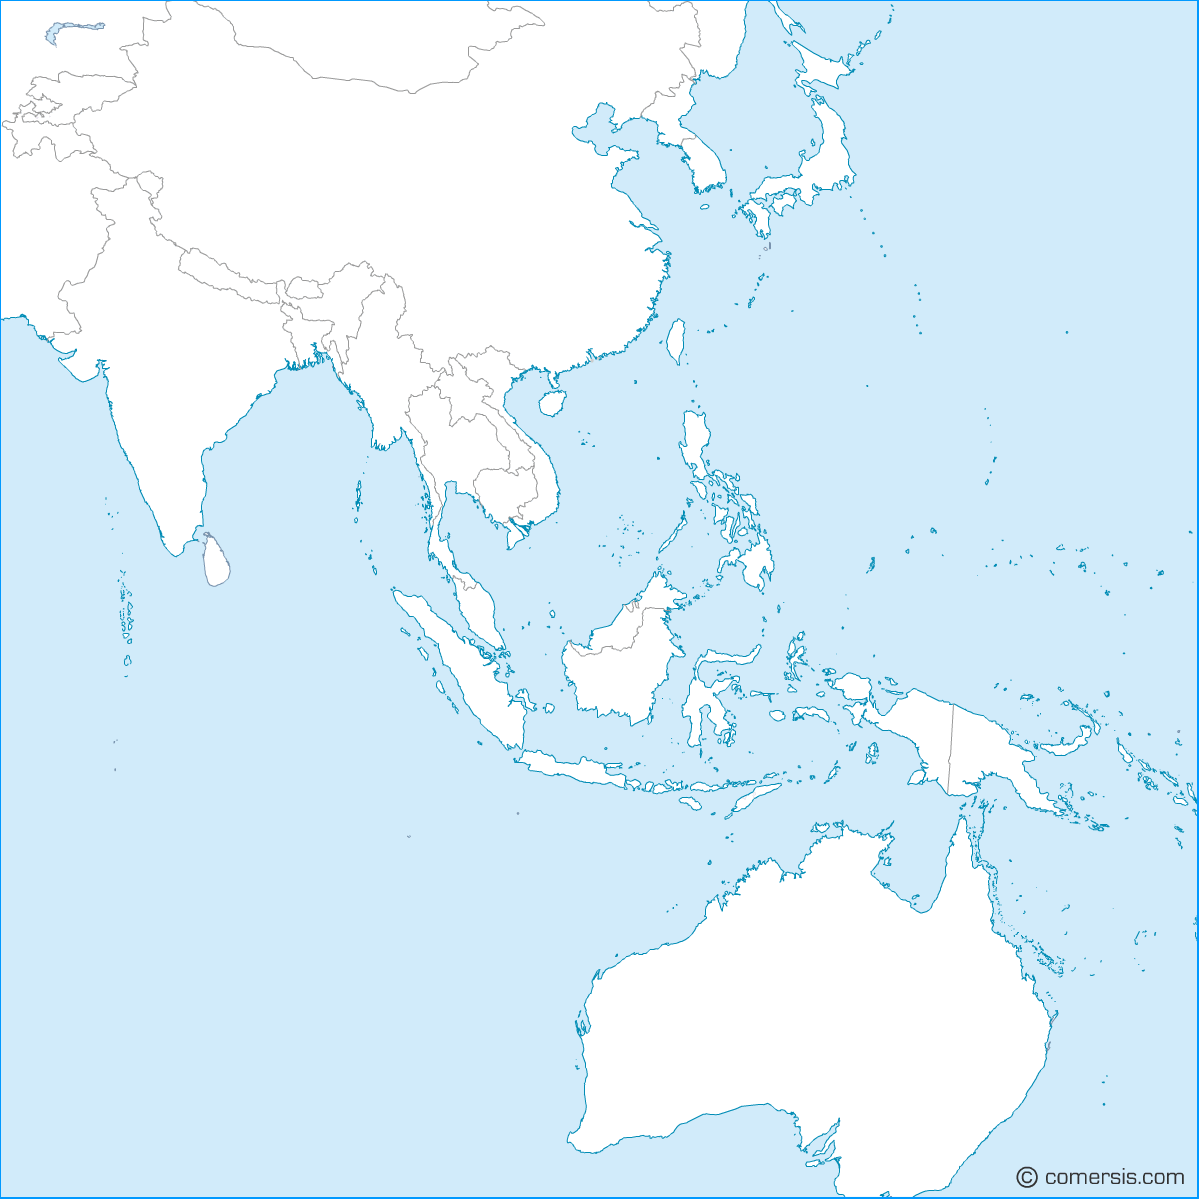 China sea free base map